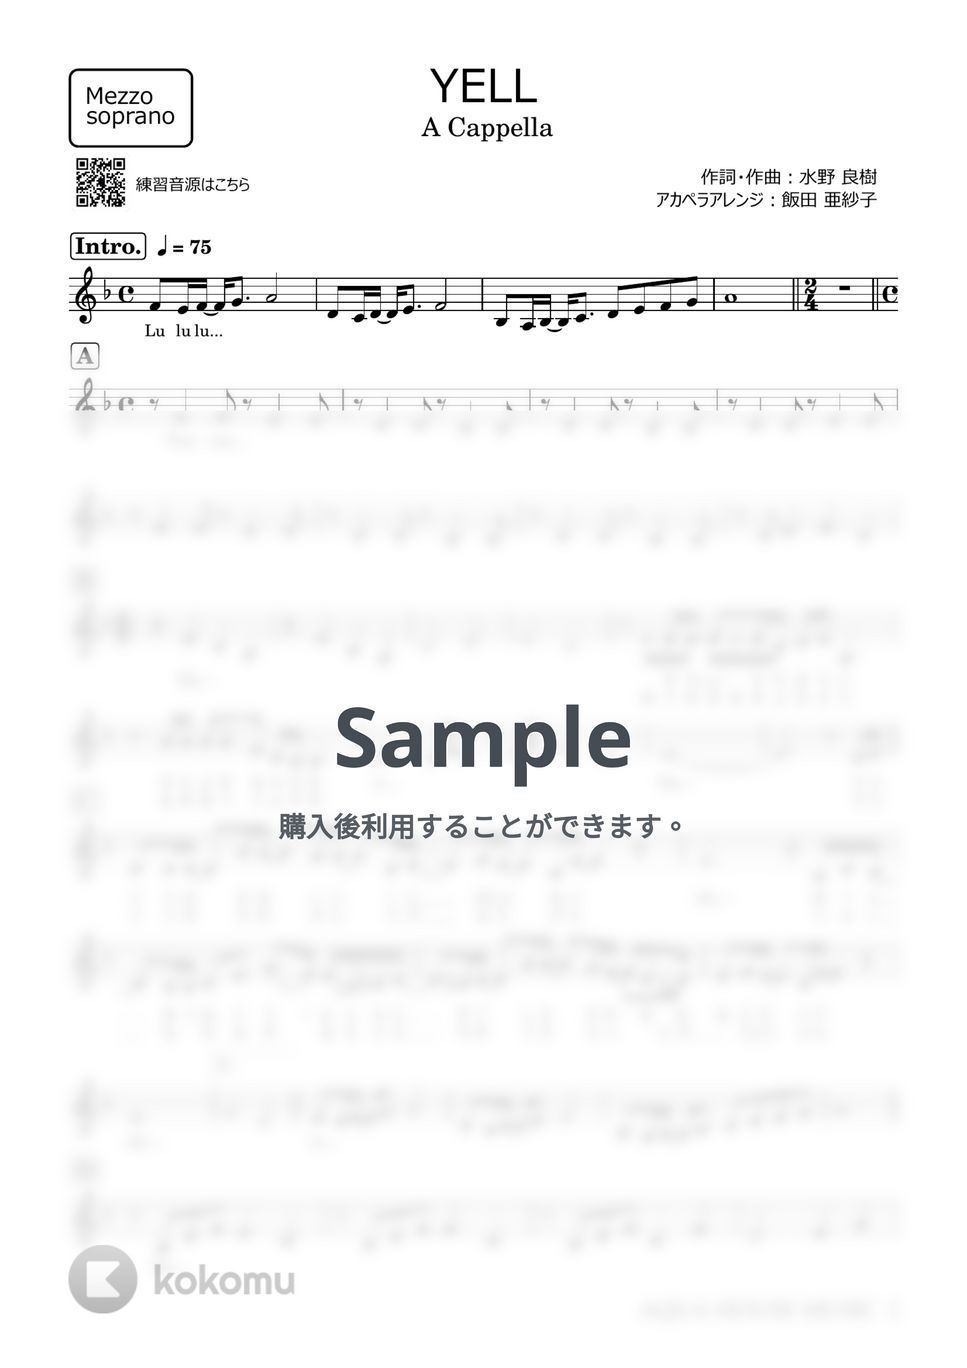 いきものがかり - YELL (アカペラ楽譜♪Mezzo sopranoパート譜) by 飯田 亜紗子